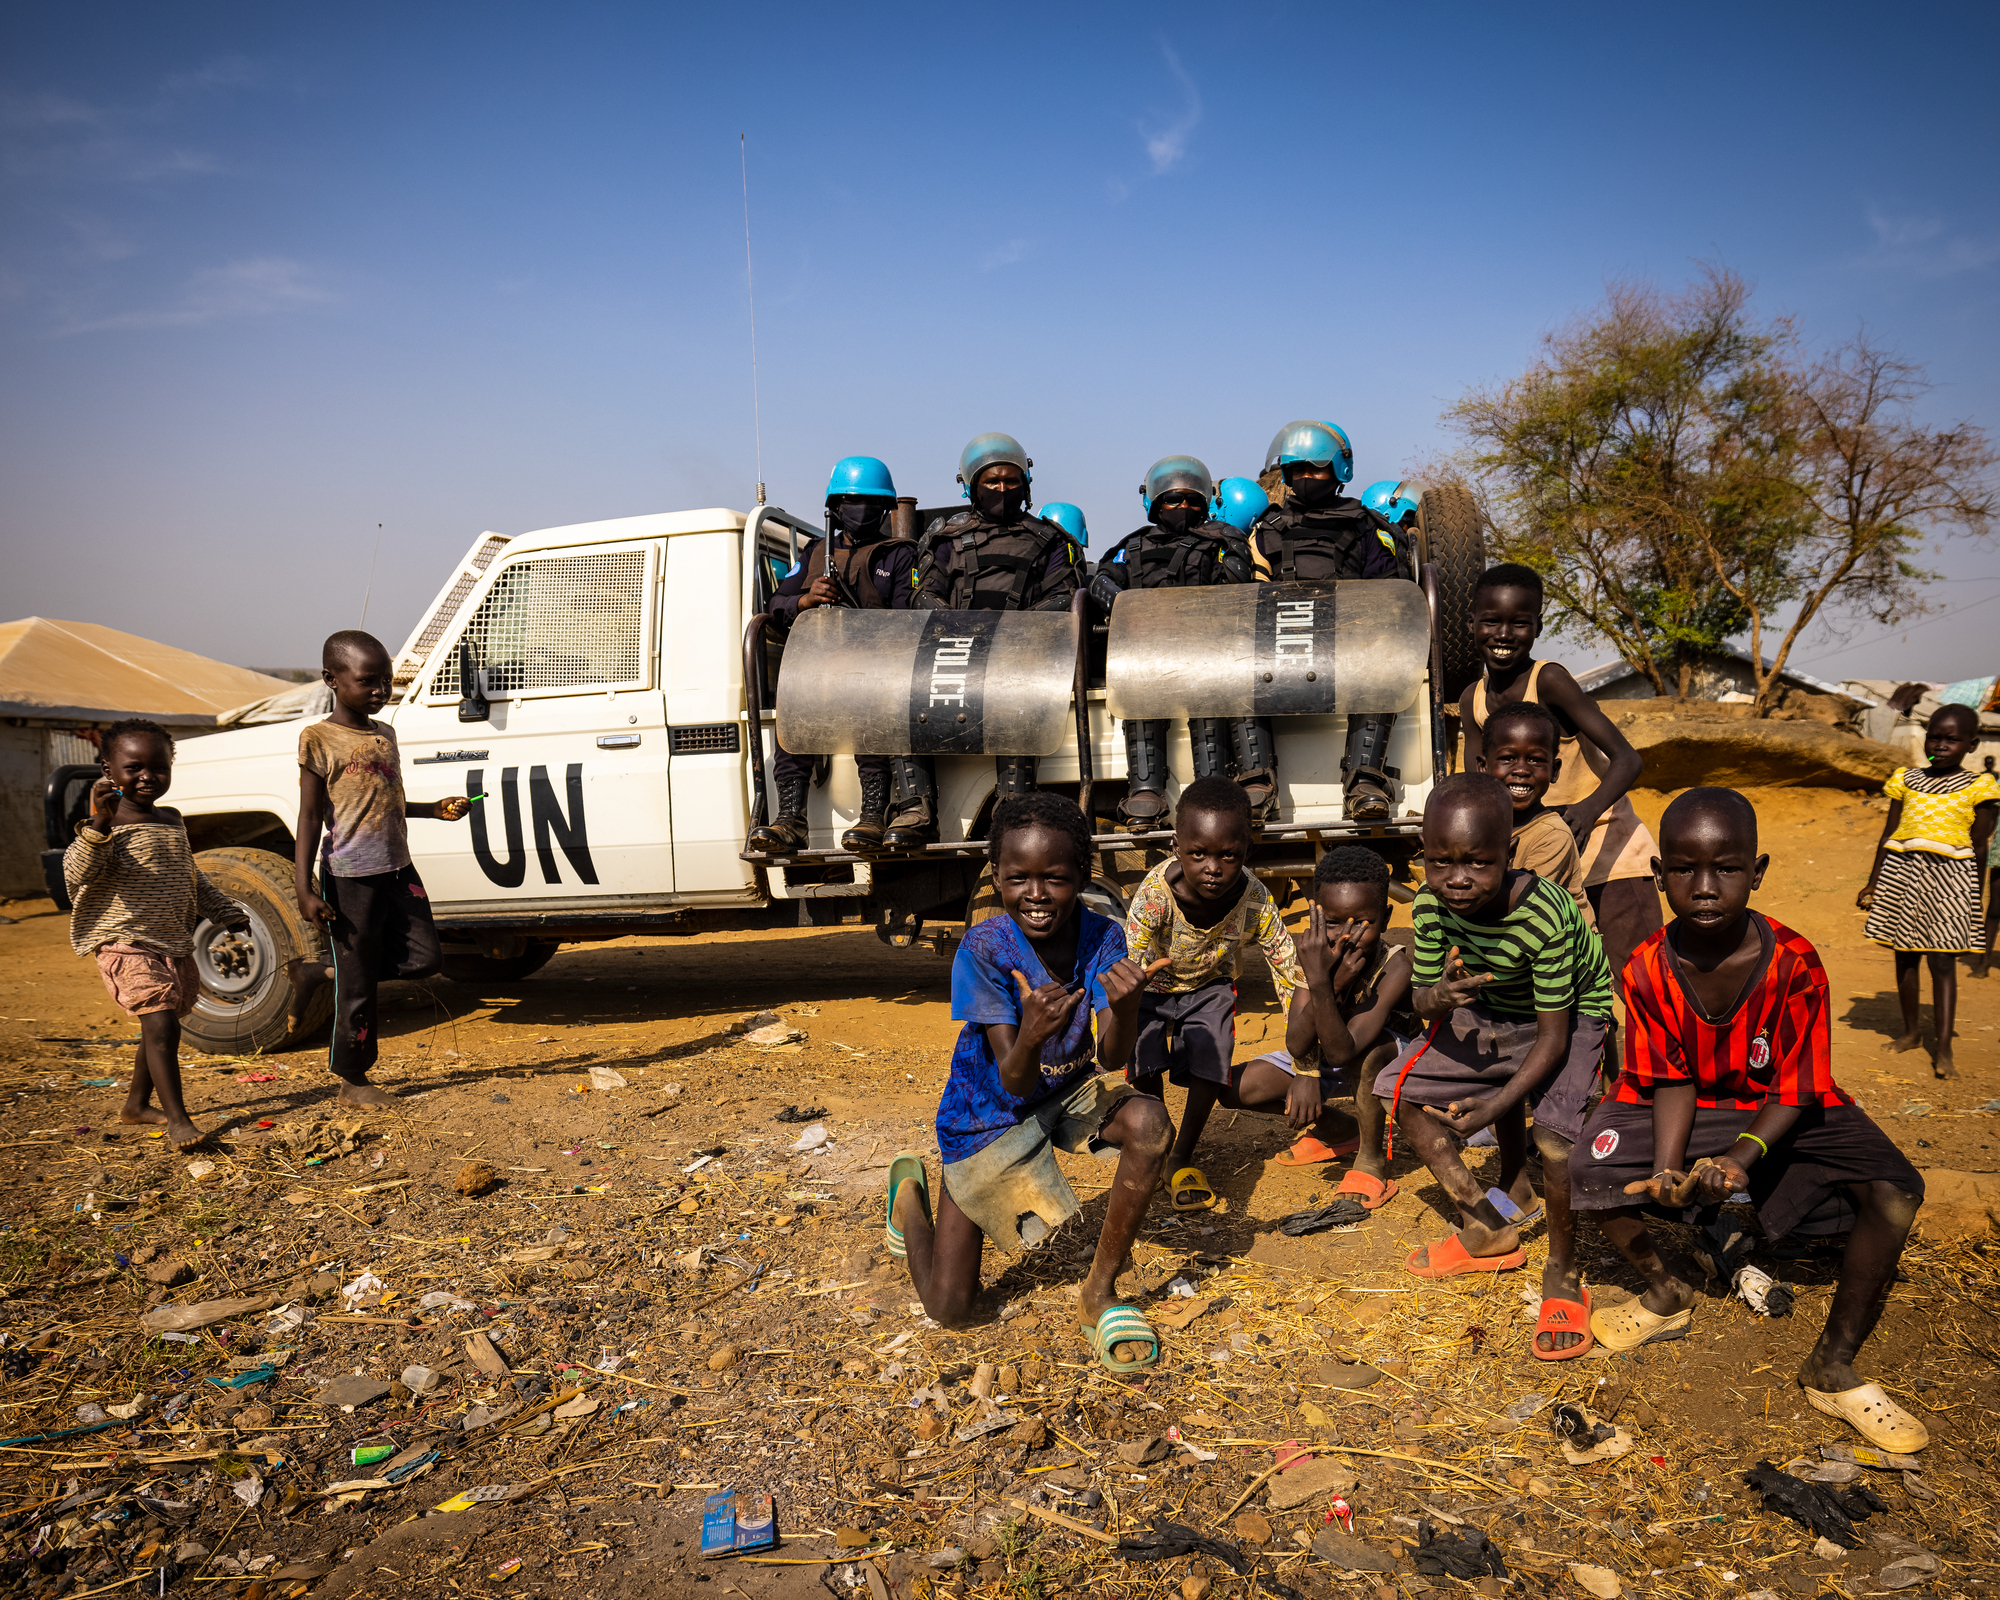 FNs styrker i Sør-Sudan (UNMISS) er ute på patruljeoppdrag i en leir for internt fordrevne i Juba, Sør Sudan. Foto: UN Photo/Gregório Cunha.